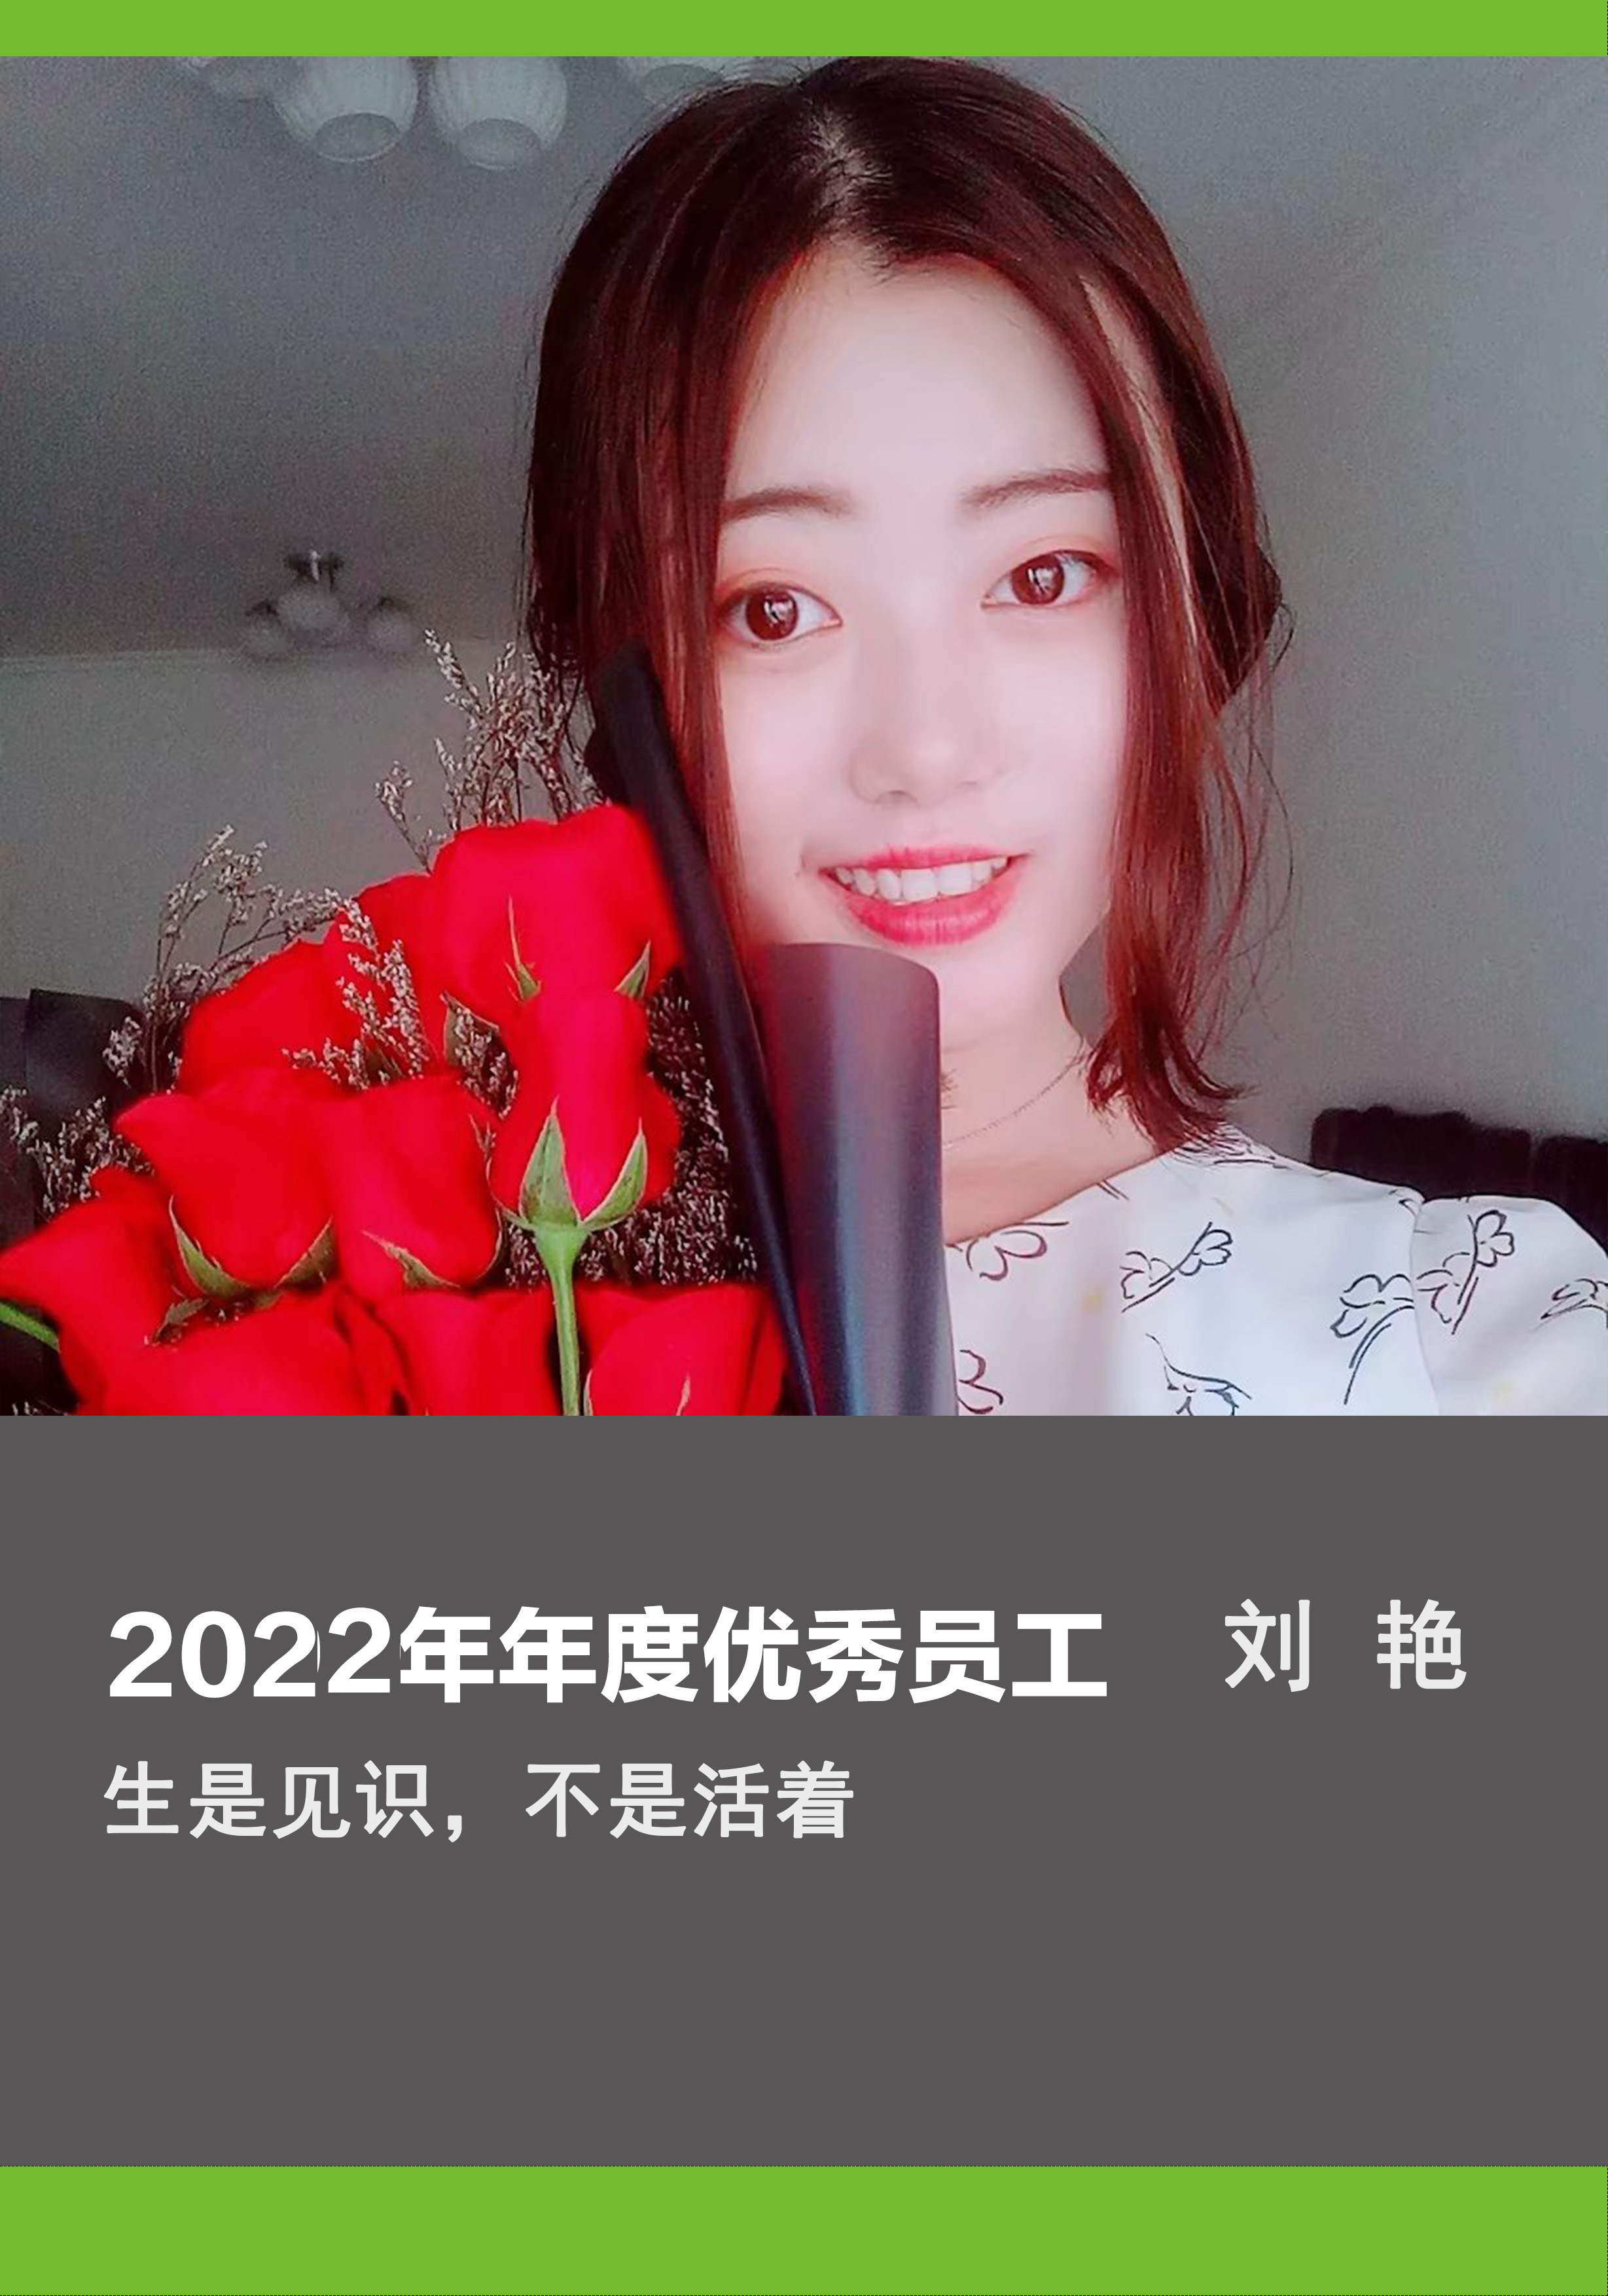 2022年优秀员工-刘艳.jpg